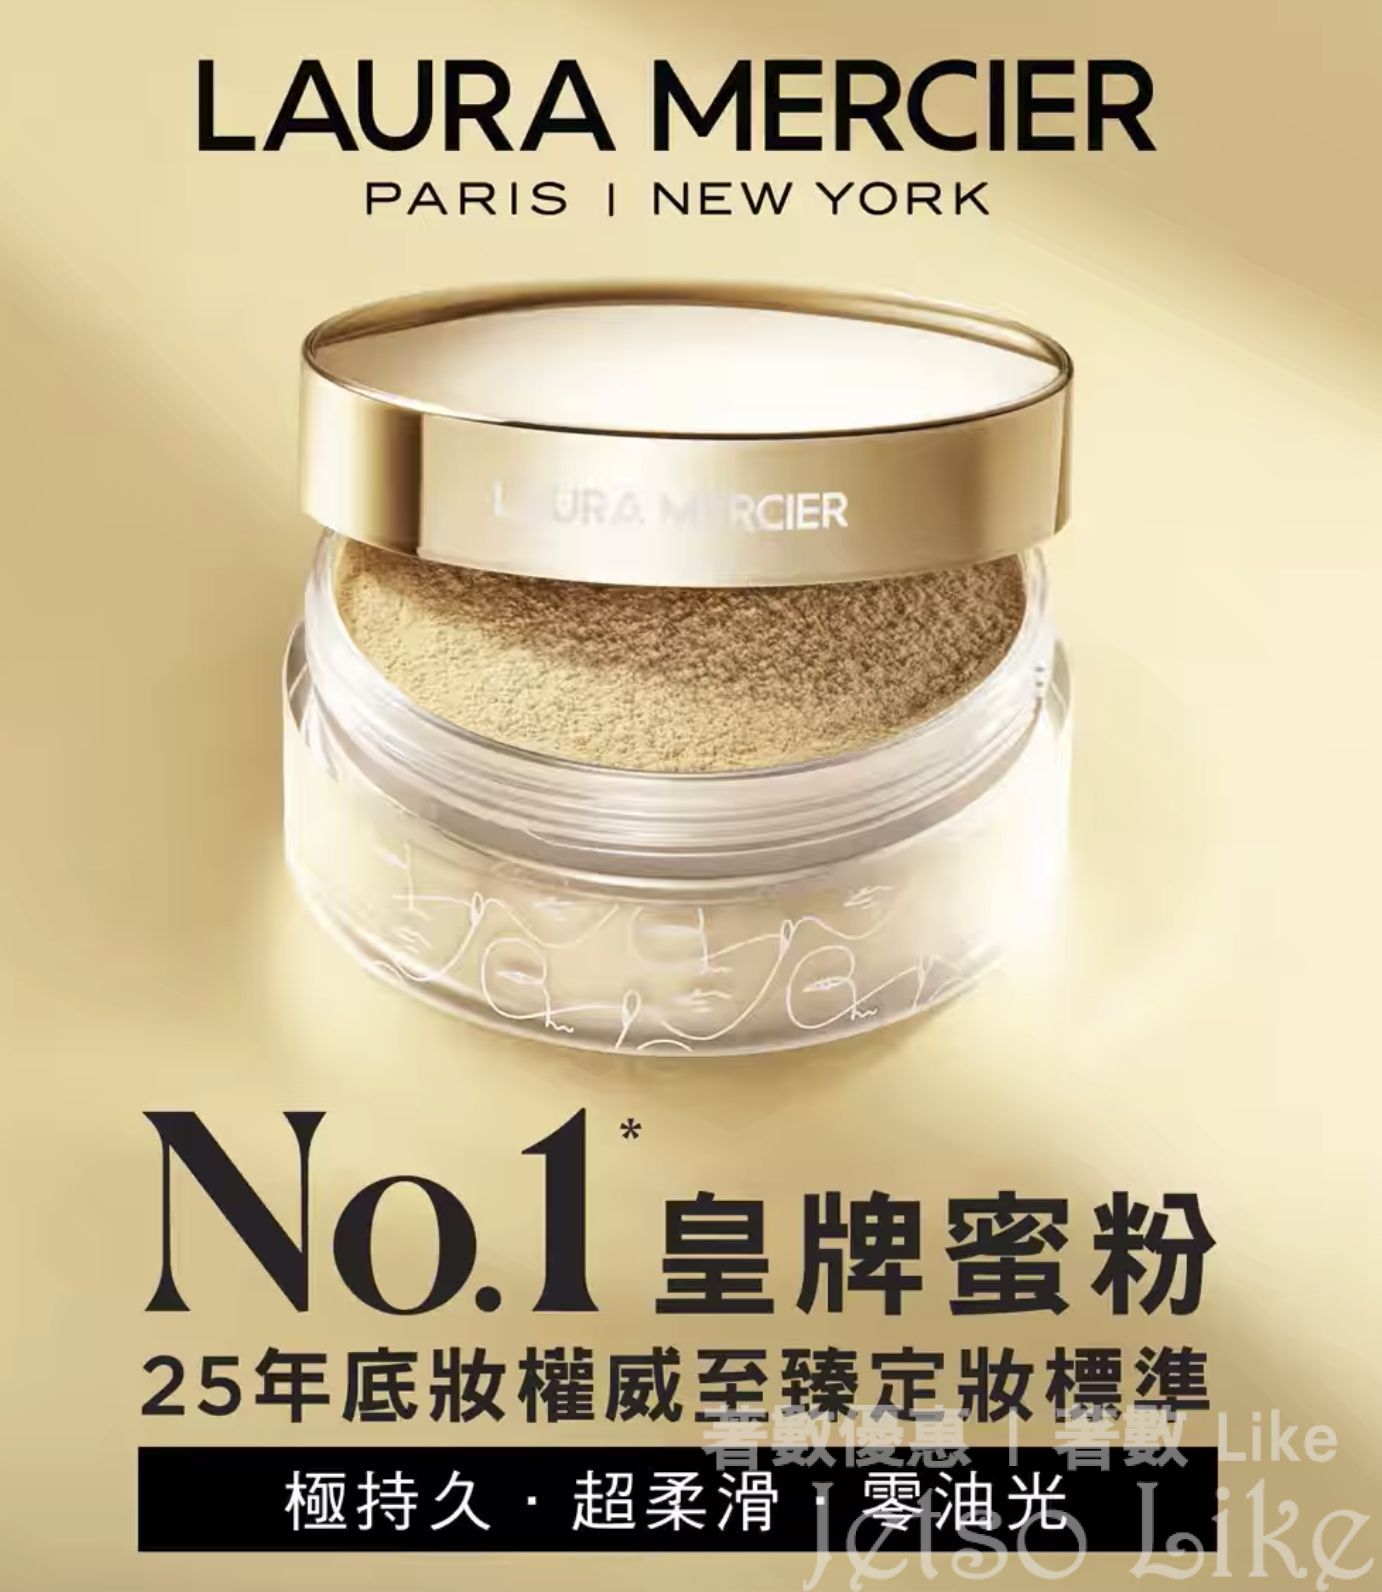 Laura Mercier 免費5分鐘法式無瑕底妝指導服務 送皇牌經典柔光透明蜜粉試用裝